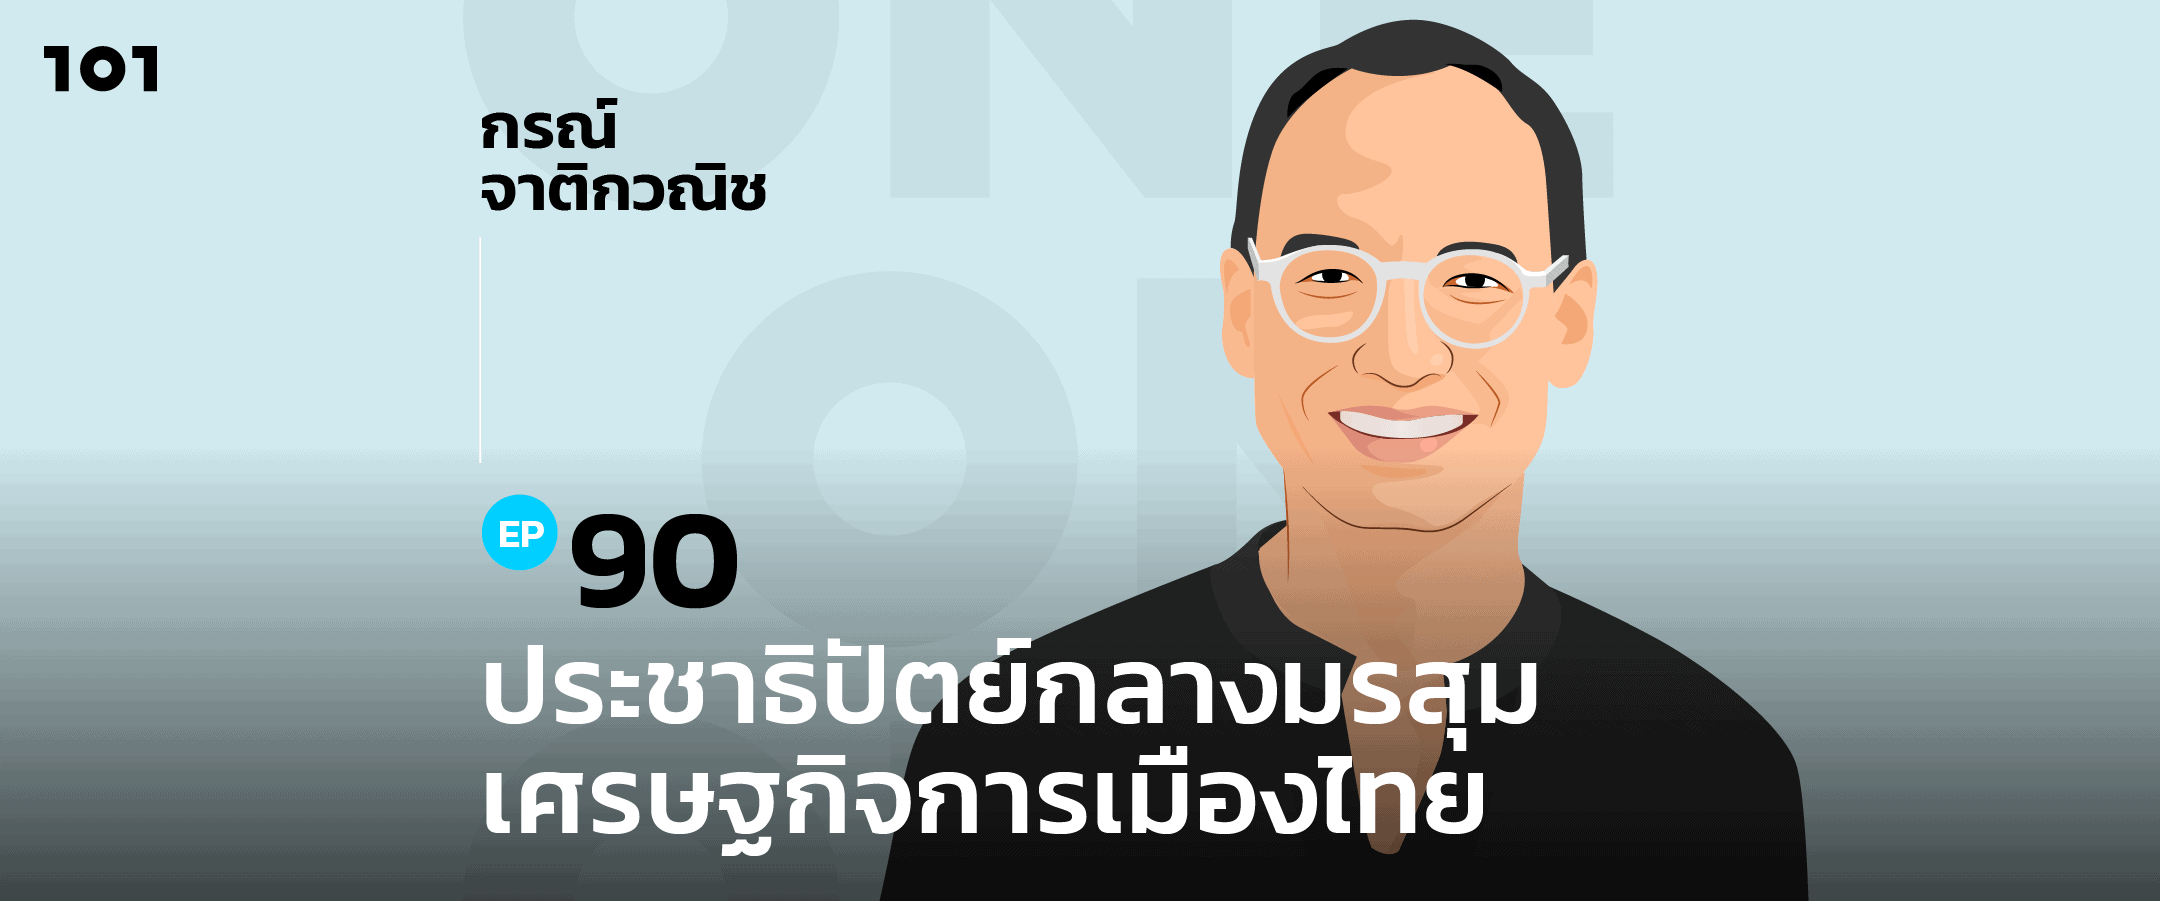 101 One-On-One EP.90 "ประชาธิปัตย์กลางมรสุมเศรษฐกิจการเมืองไทย" กับ กรณ์ จาติกวณิช